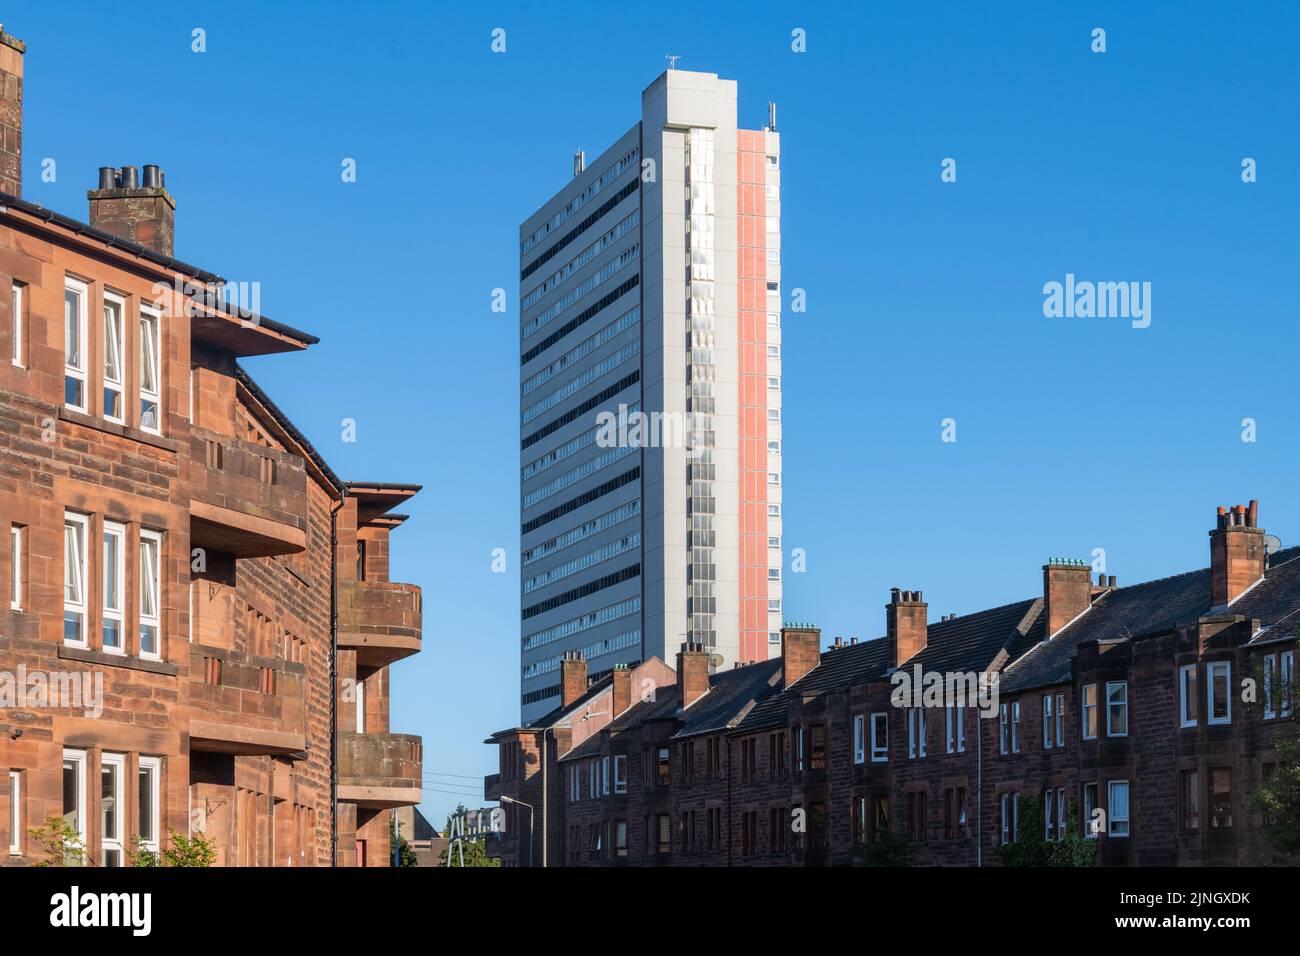 Anniesland court - Une tour résidentielle classée et brutaliste aux côtés de bâtiments traditionnels en grès rouge, Anniesland, Glasgow, Écosse, Royaume-Uni Banque D'Images